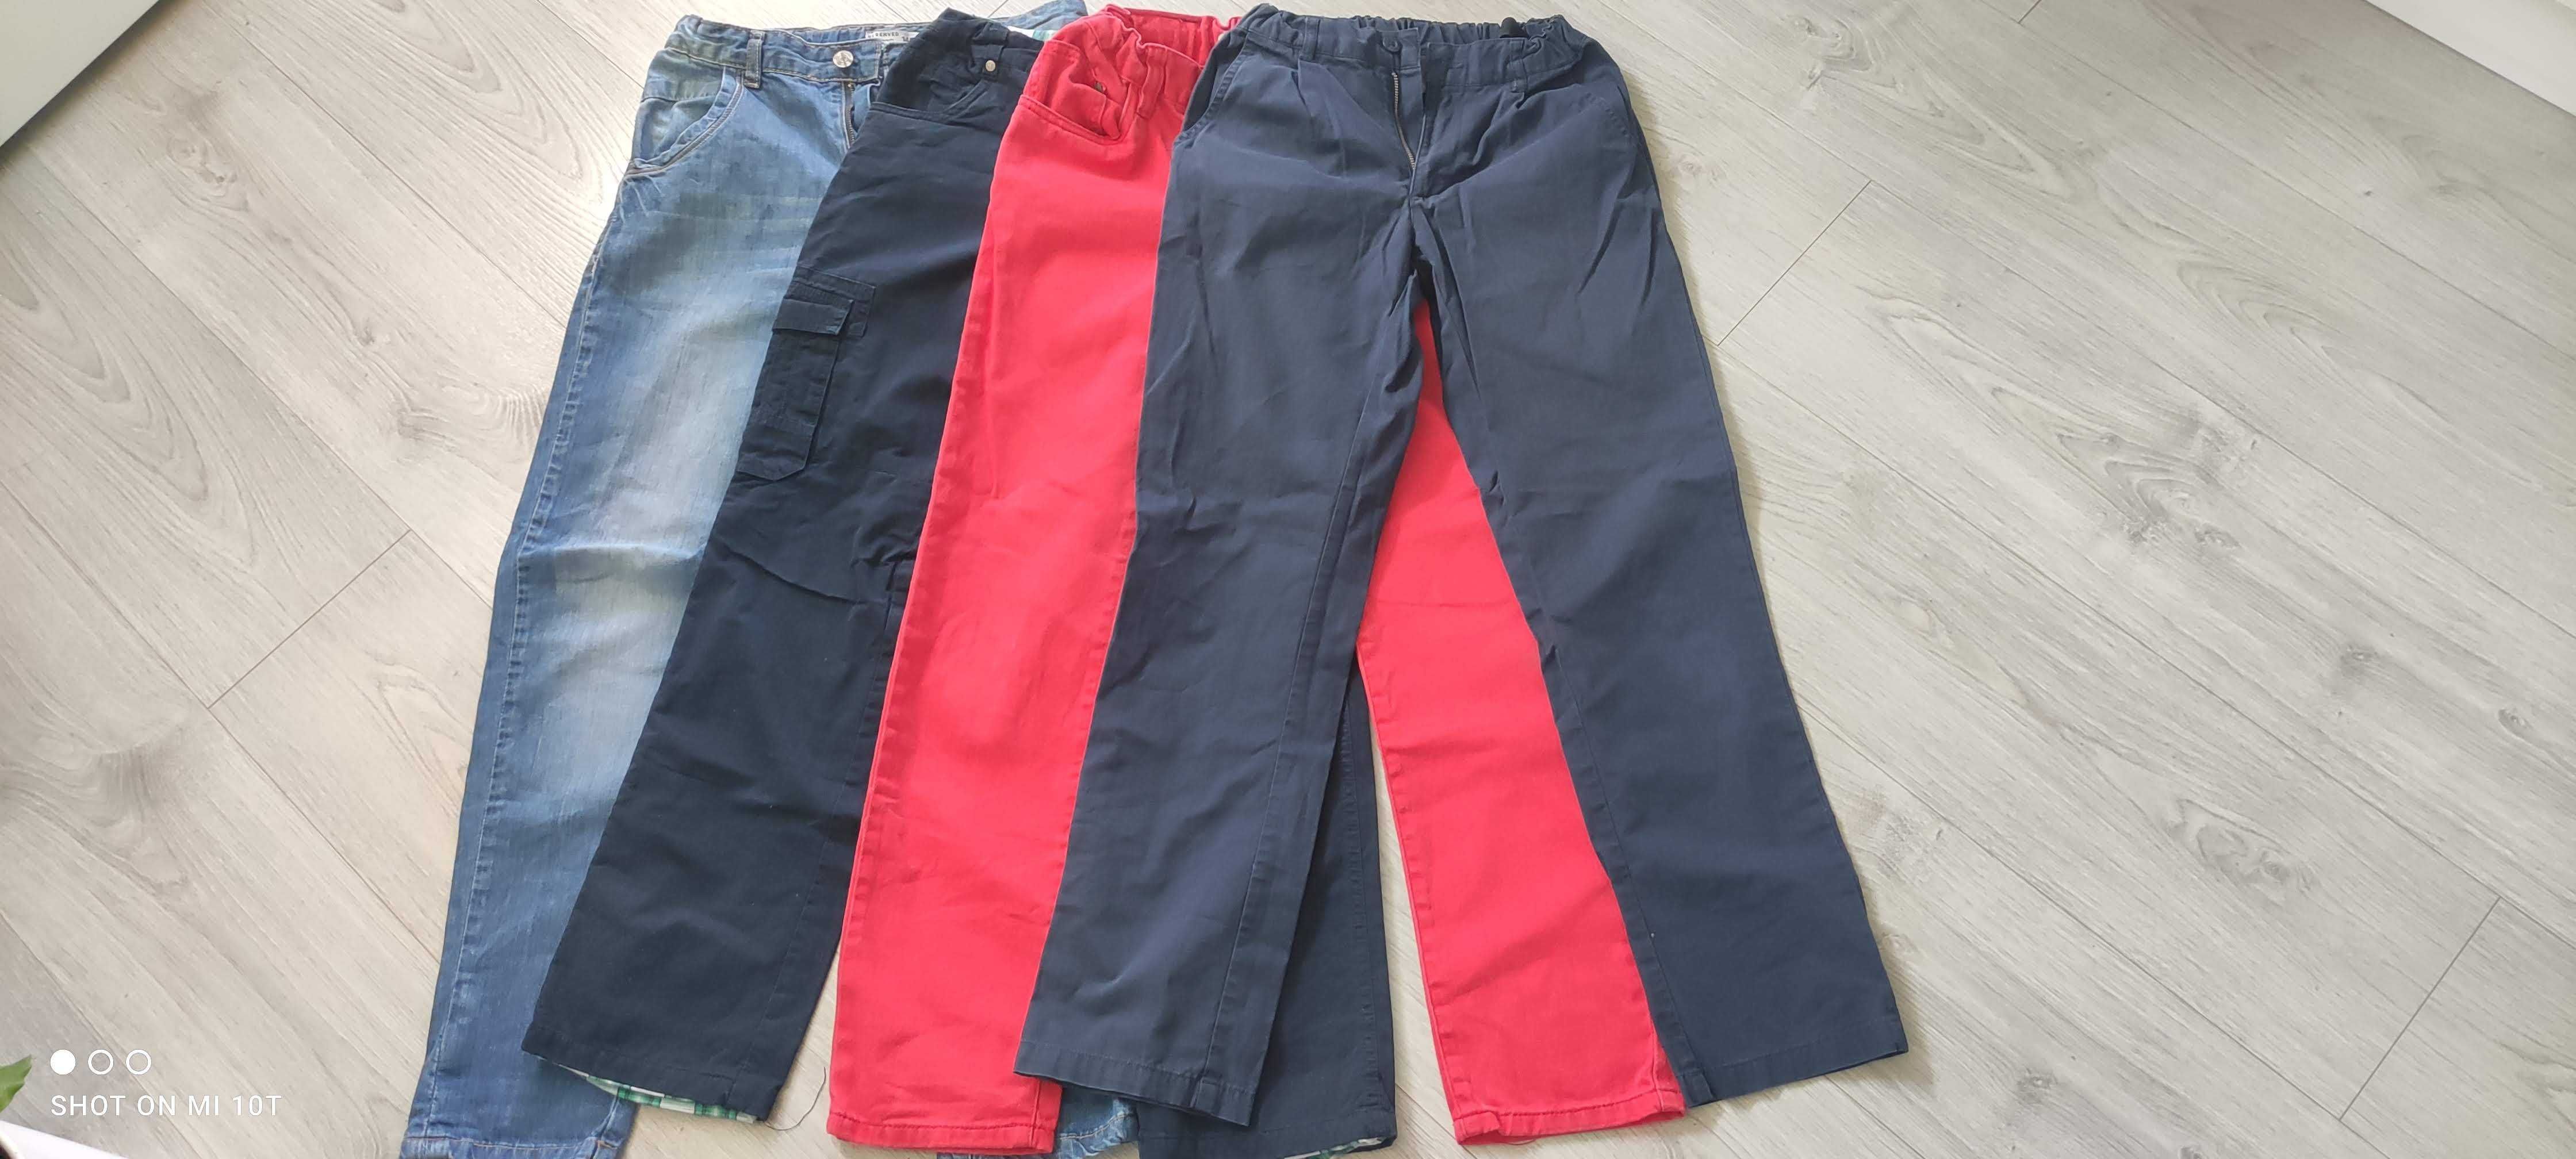 spodnie jeansy chłopięce rozm 146 reserved coccodrillo quadri foglio